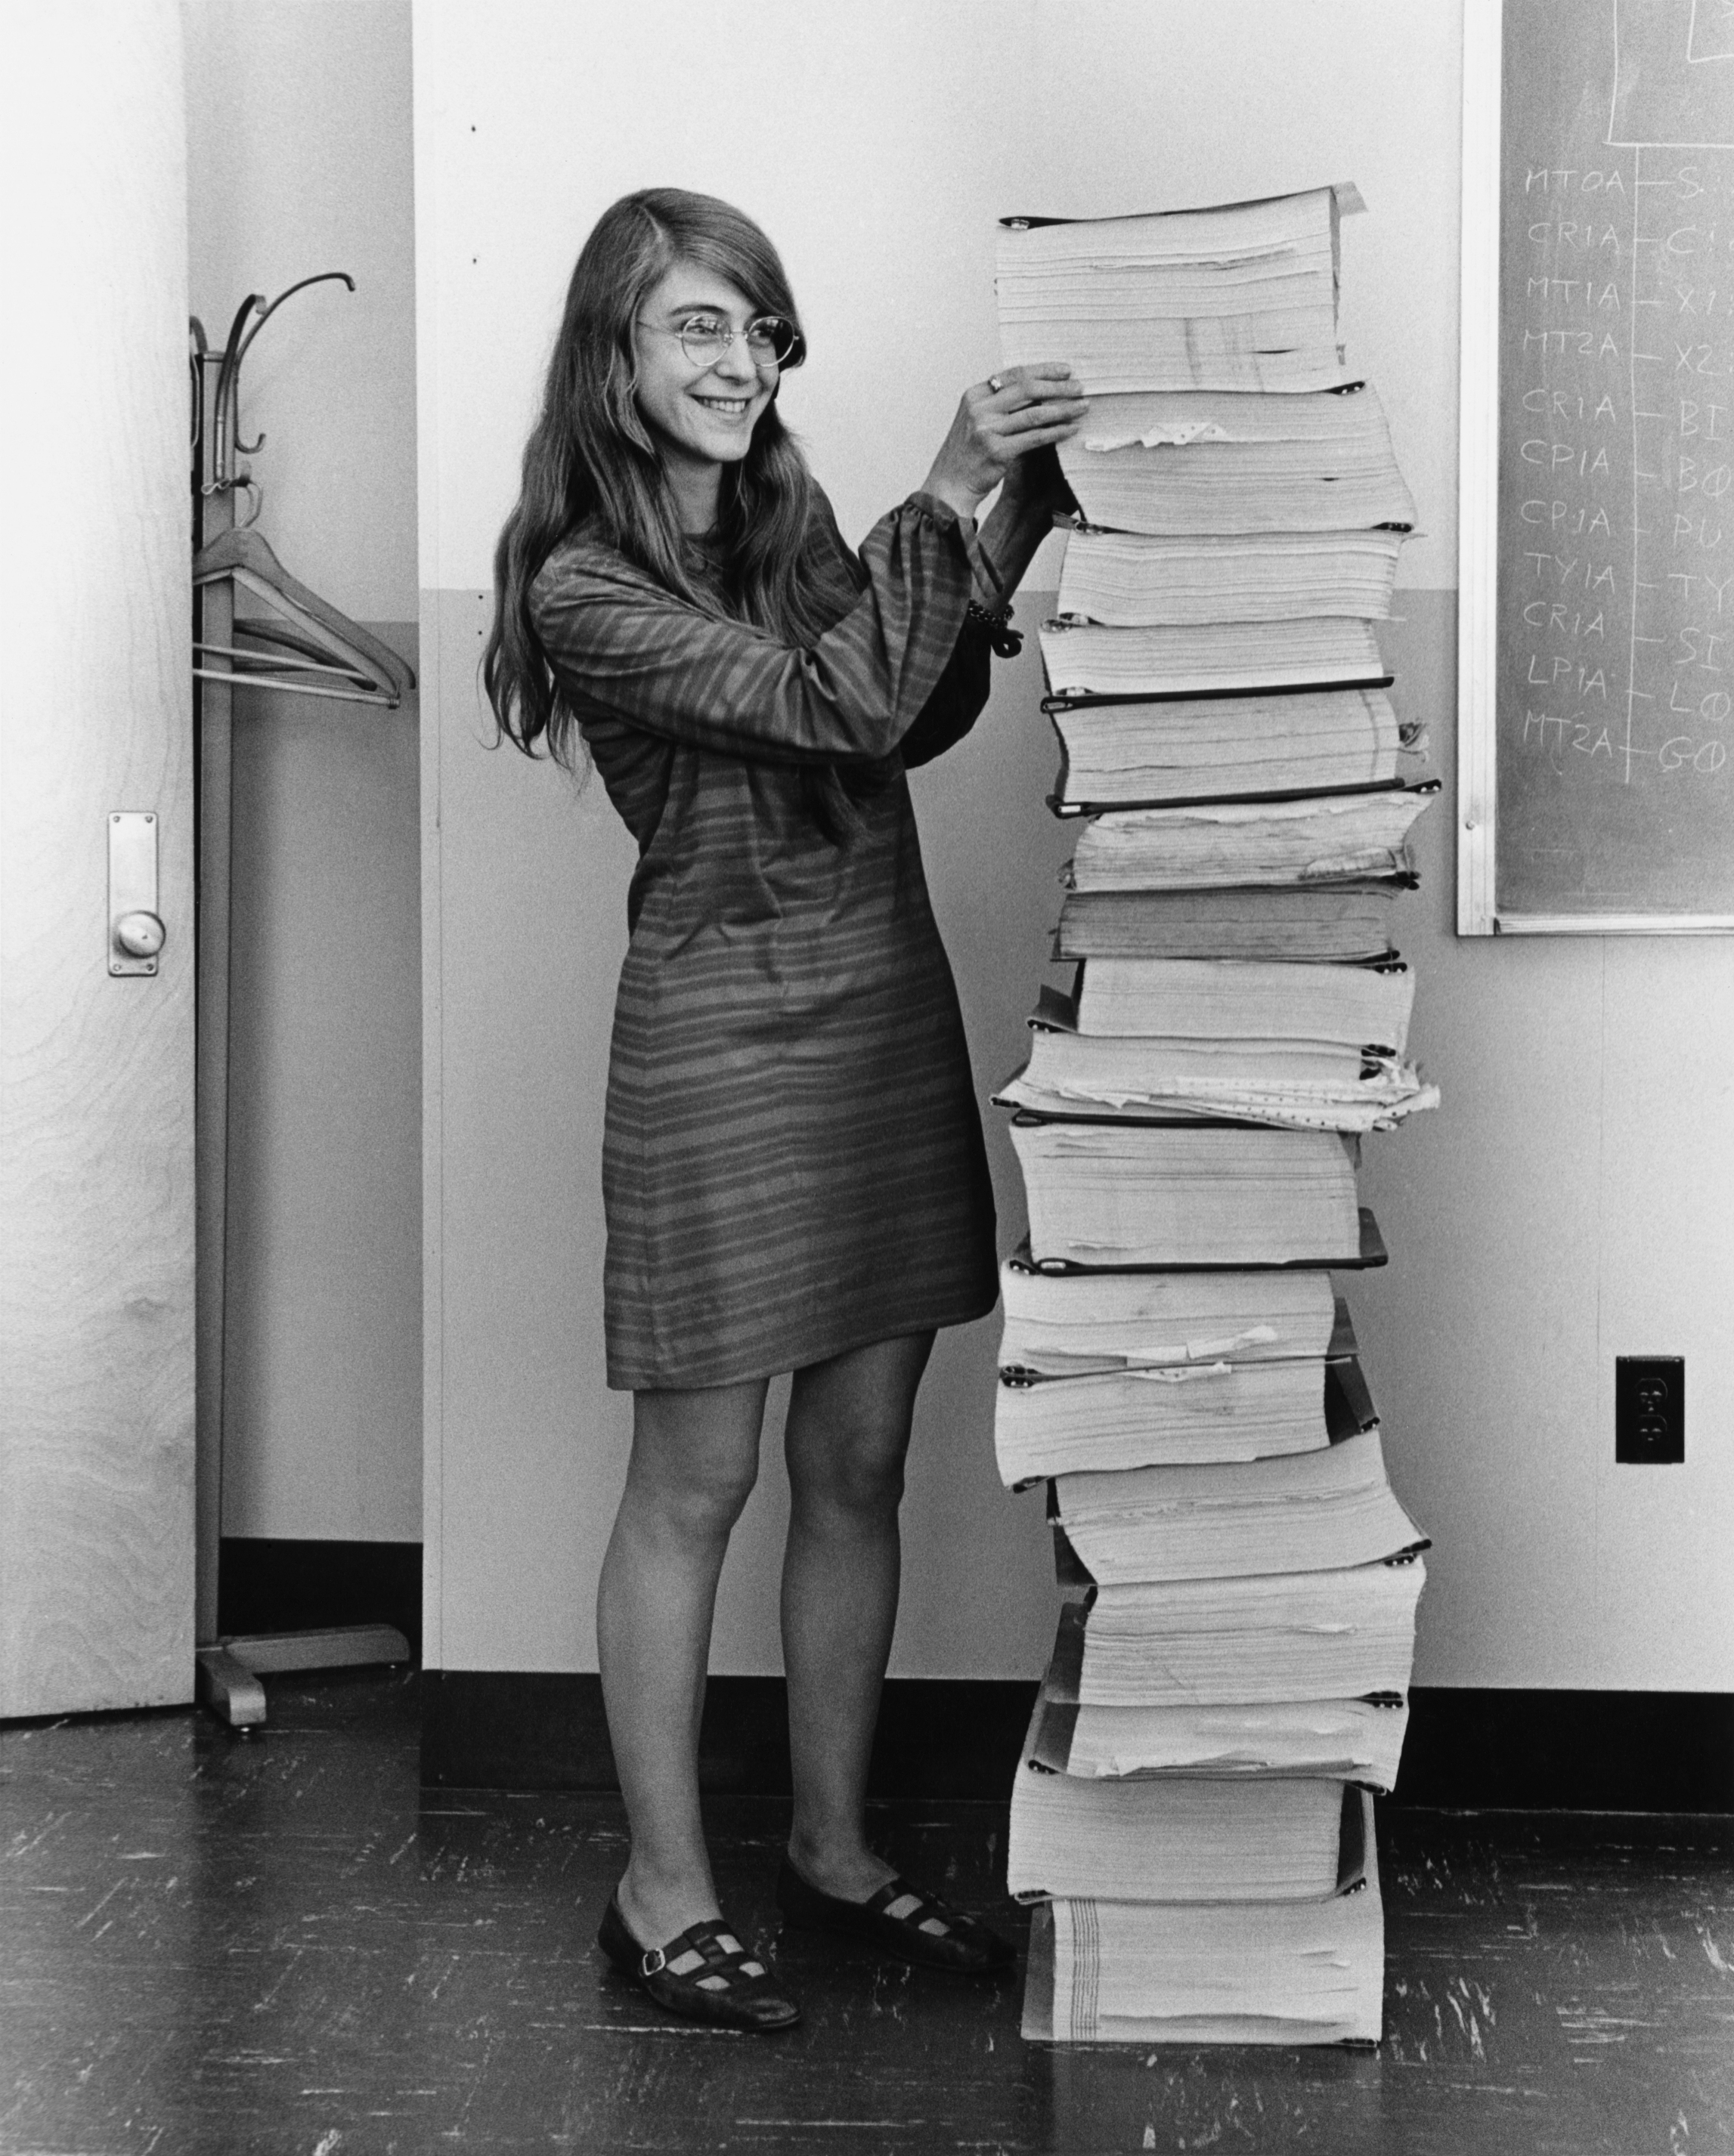 Margaret Hamilton durant el projecte Apollo amb el codi imprés de l’AGC